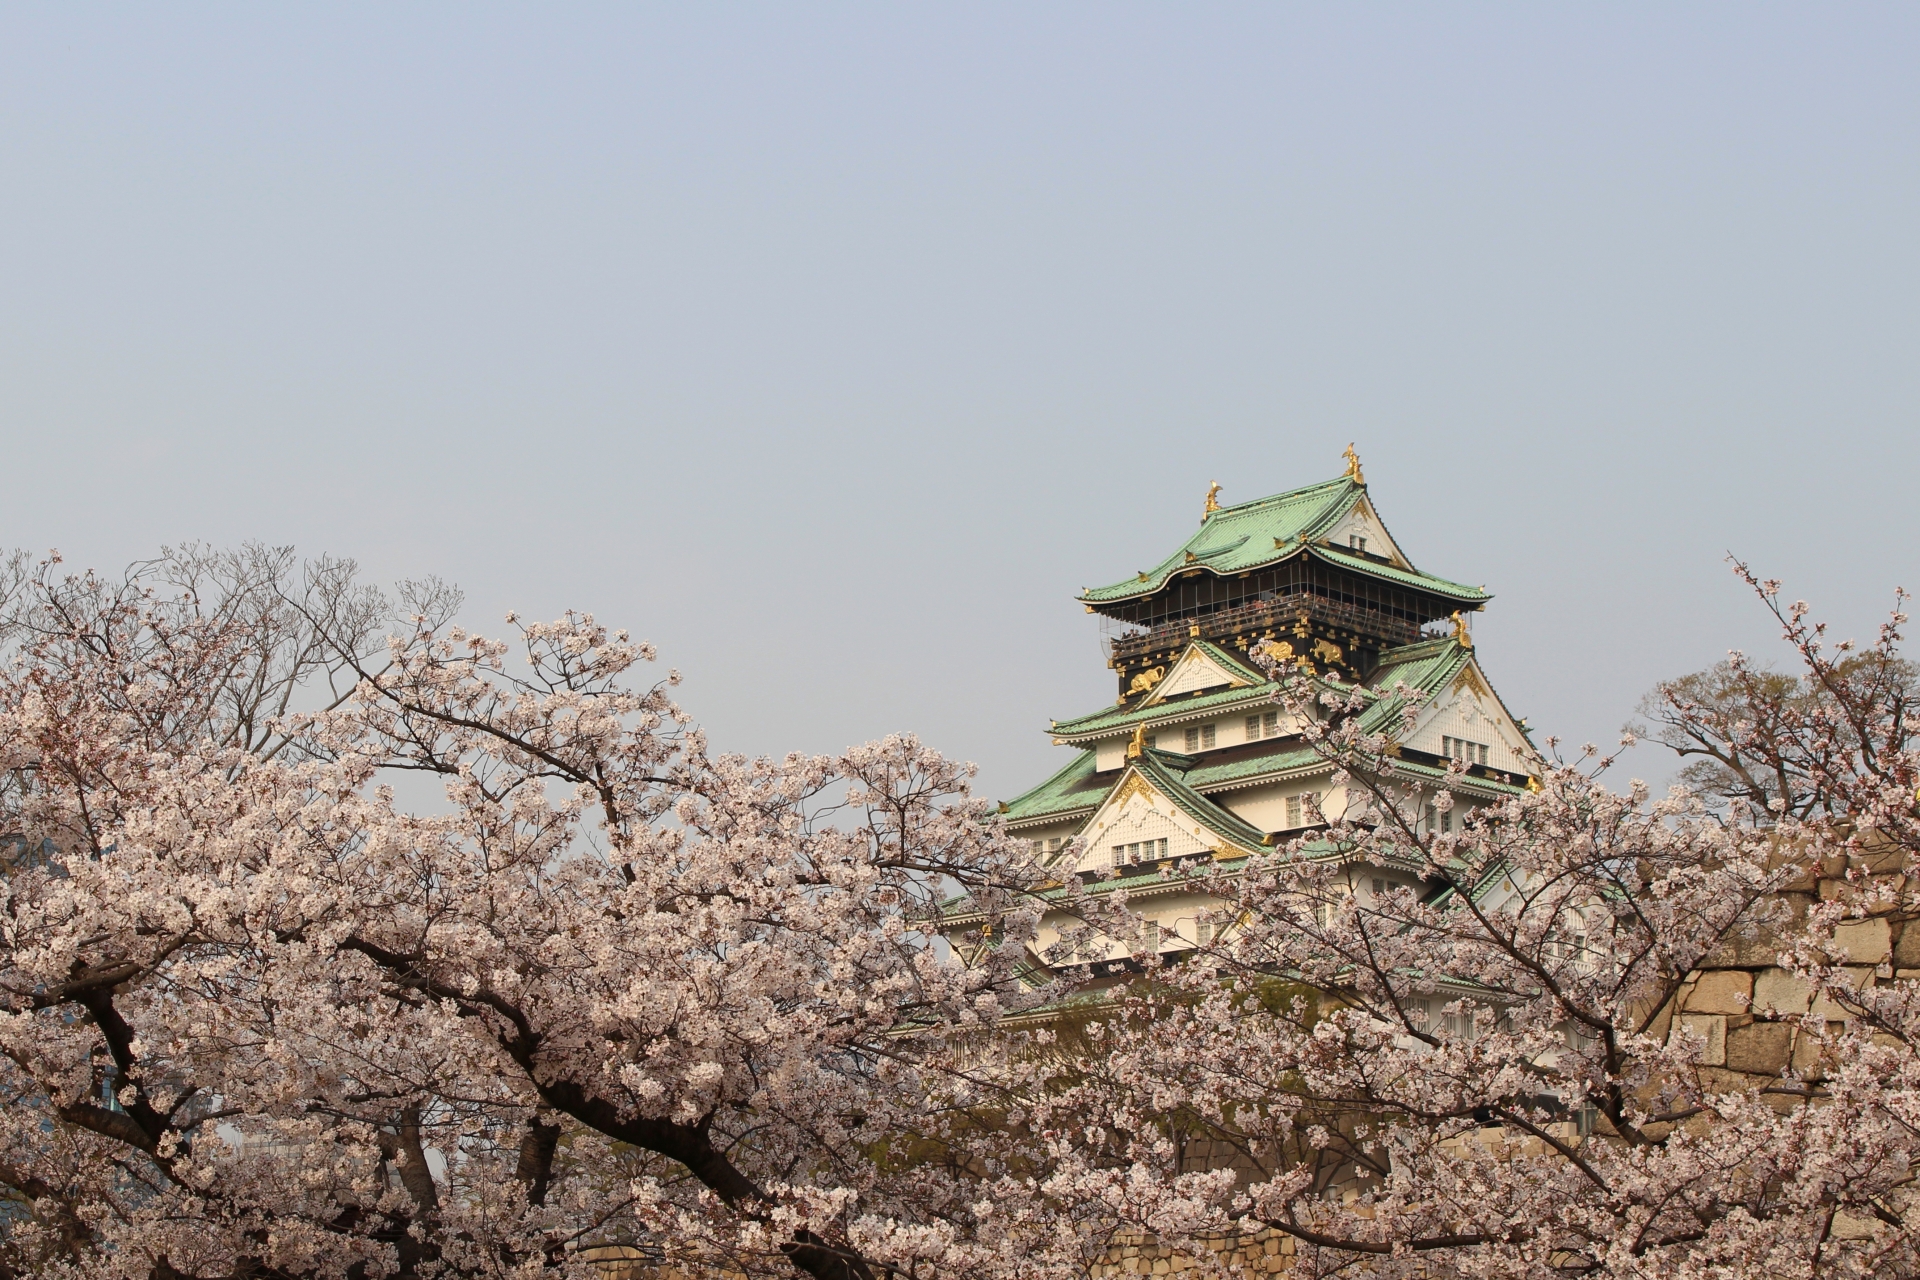 大阪じょうと桜の写真です